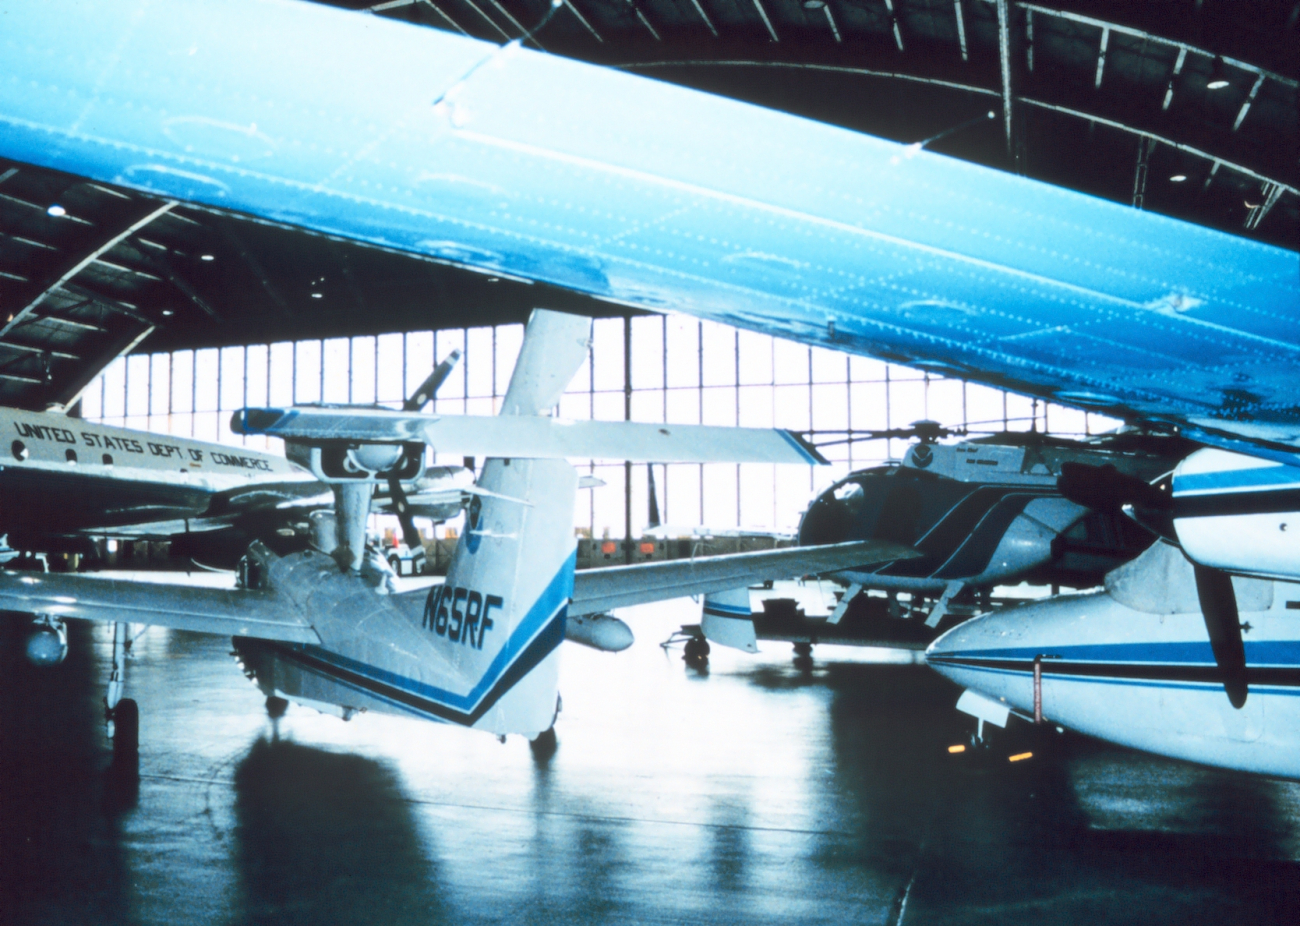 A menagerie of NOAA aircraft at the NOAA hangar at MacDill AFB